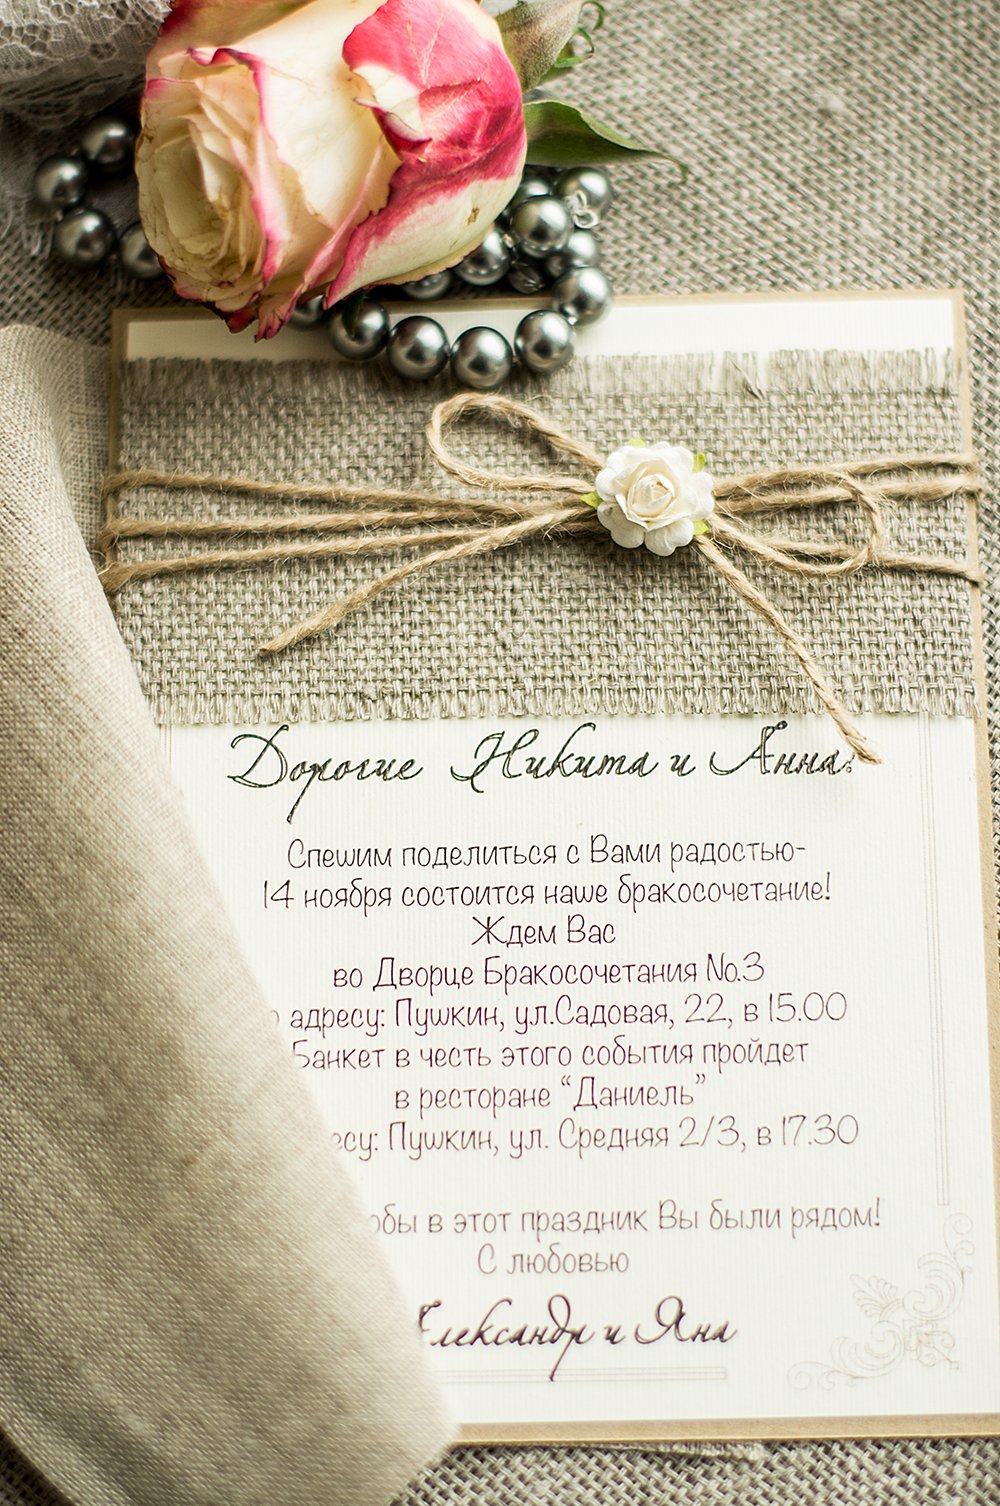 Invitation Card Design